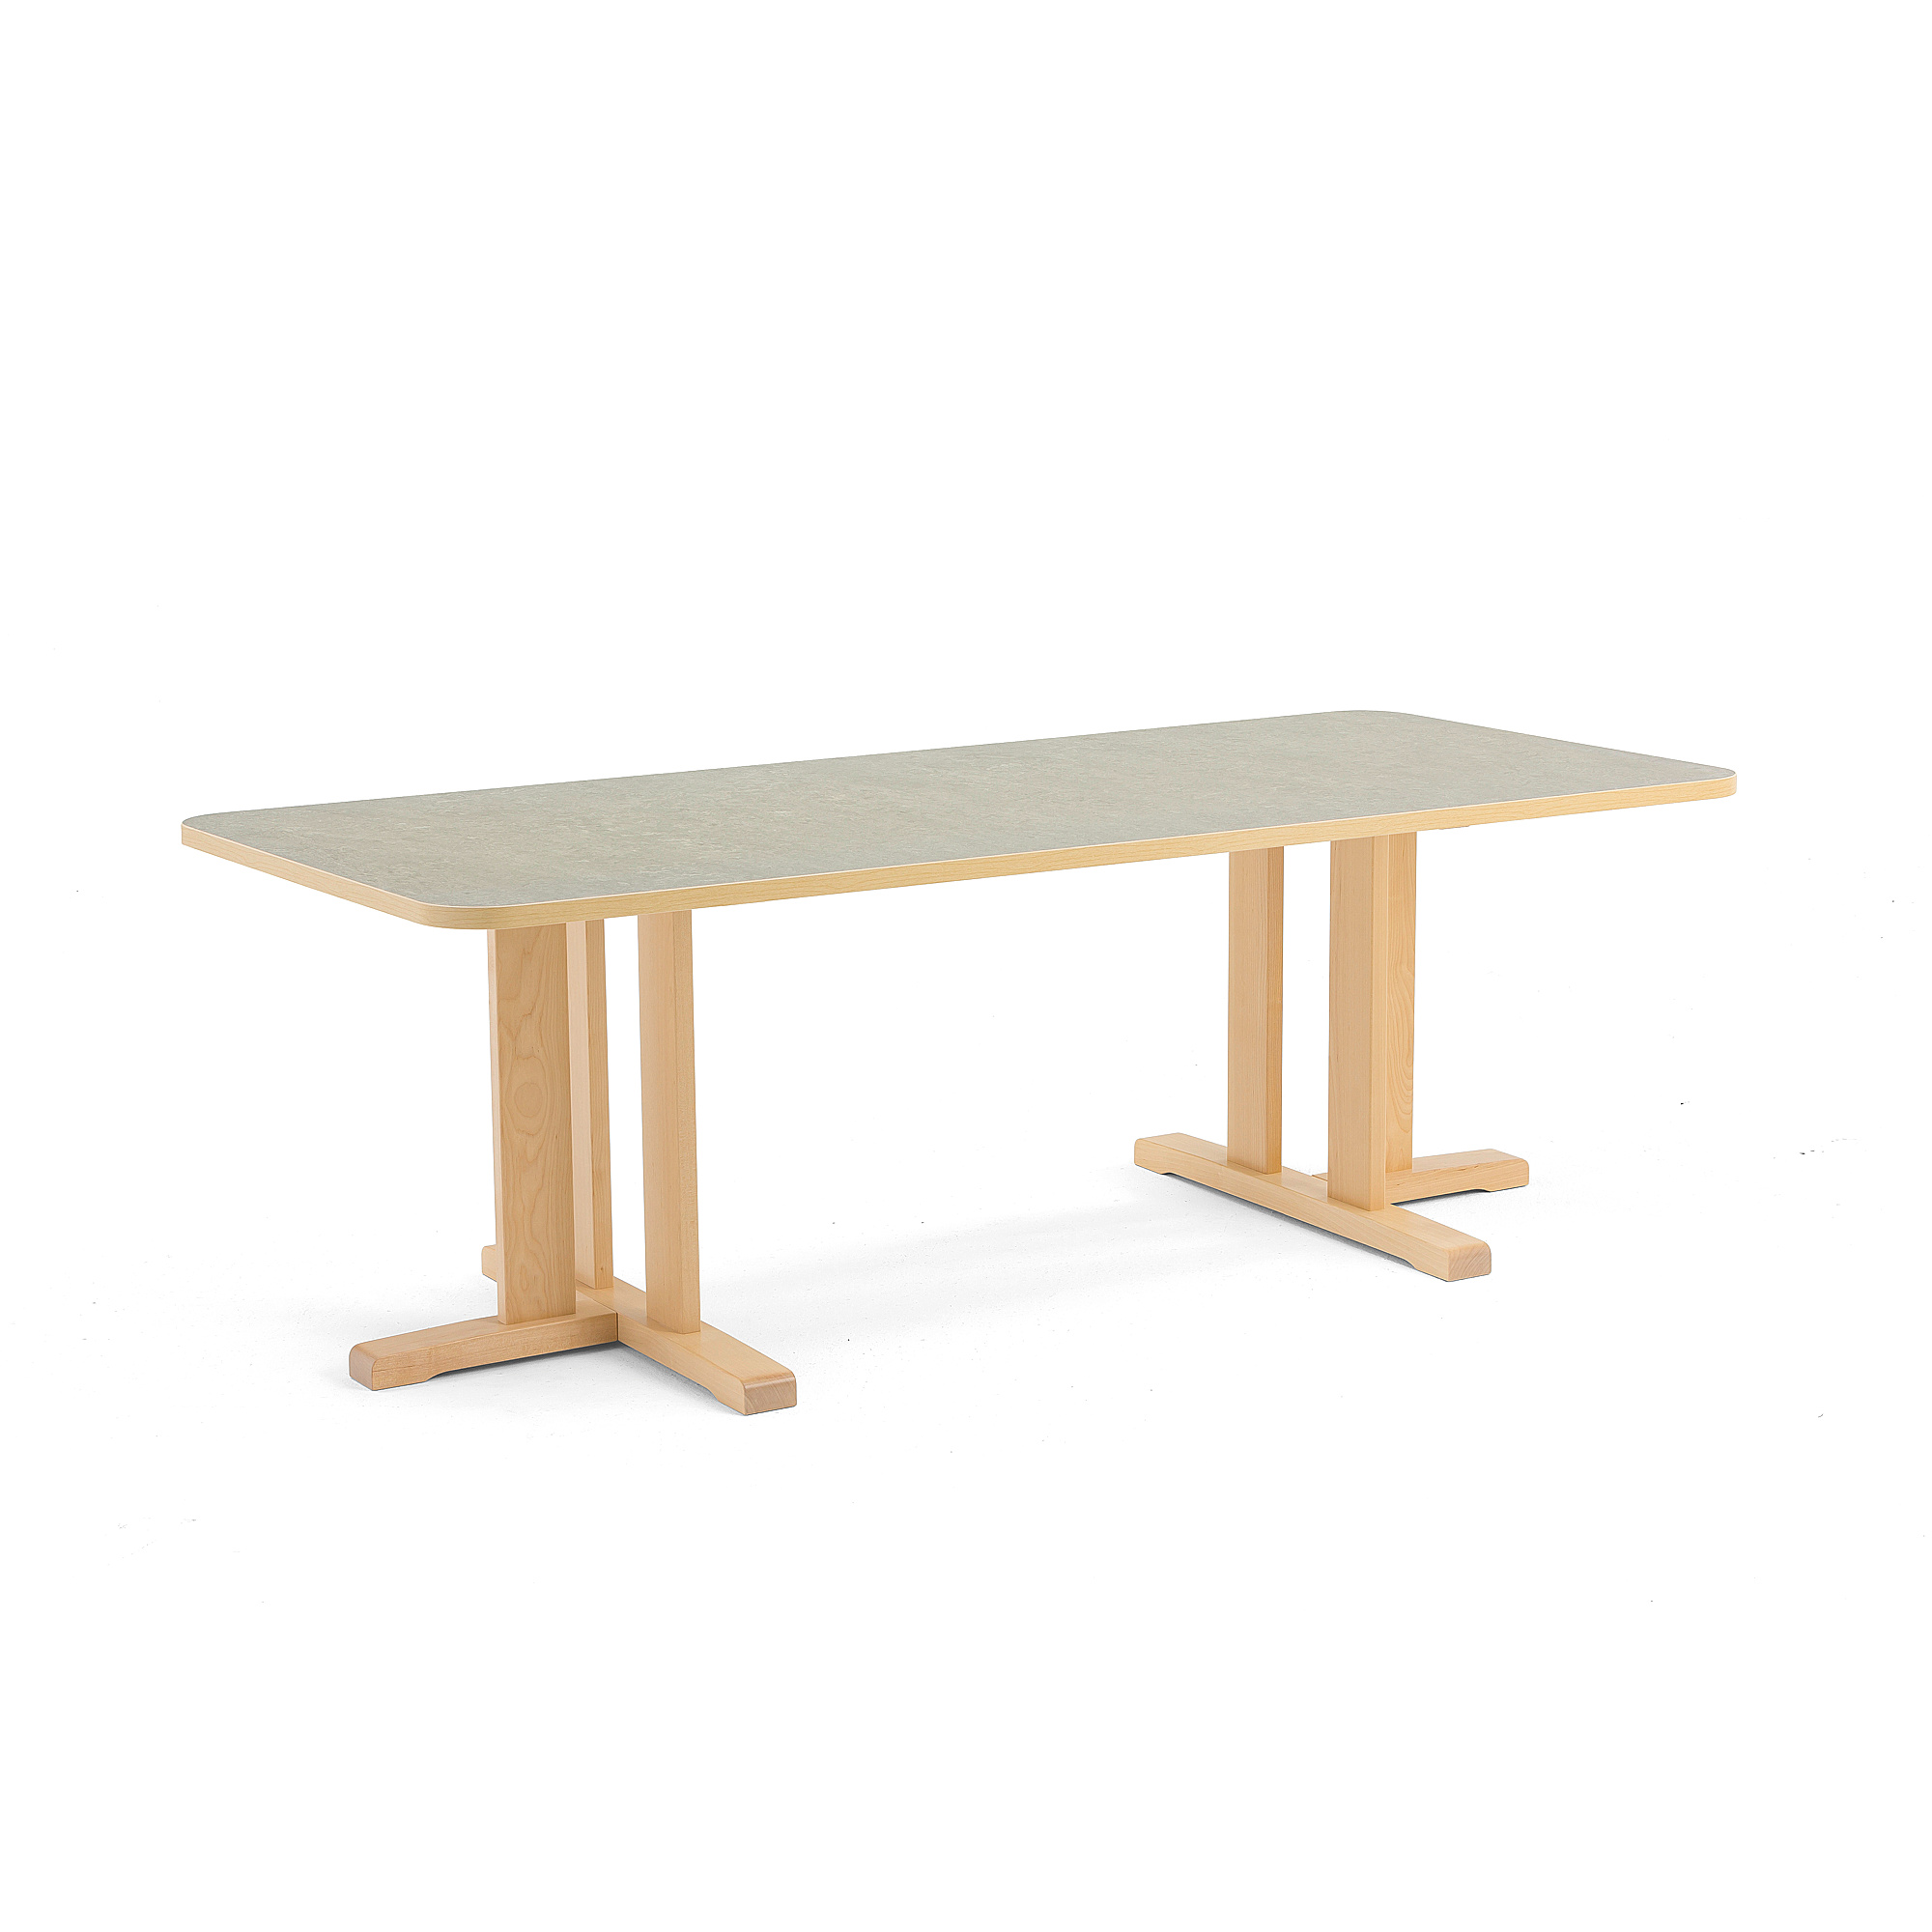 Stůl KUPOL, 1800x800x600 mm, obdélník, akustické linoleum, bříza/šedá